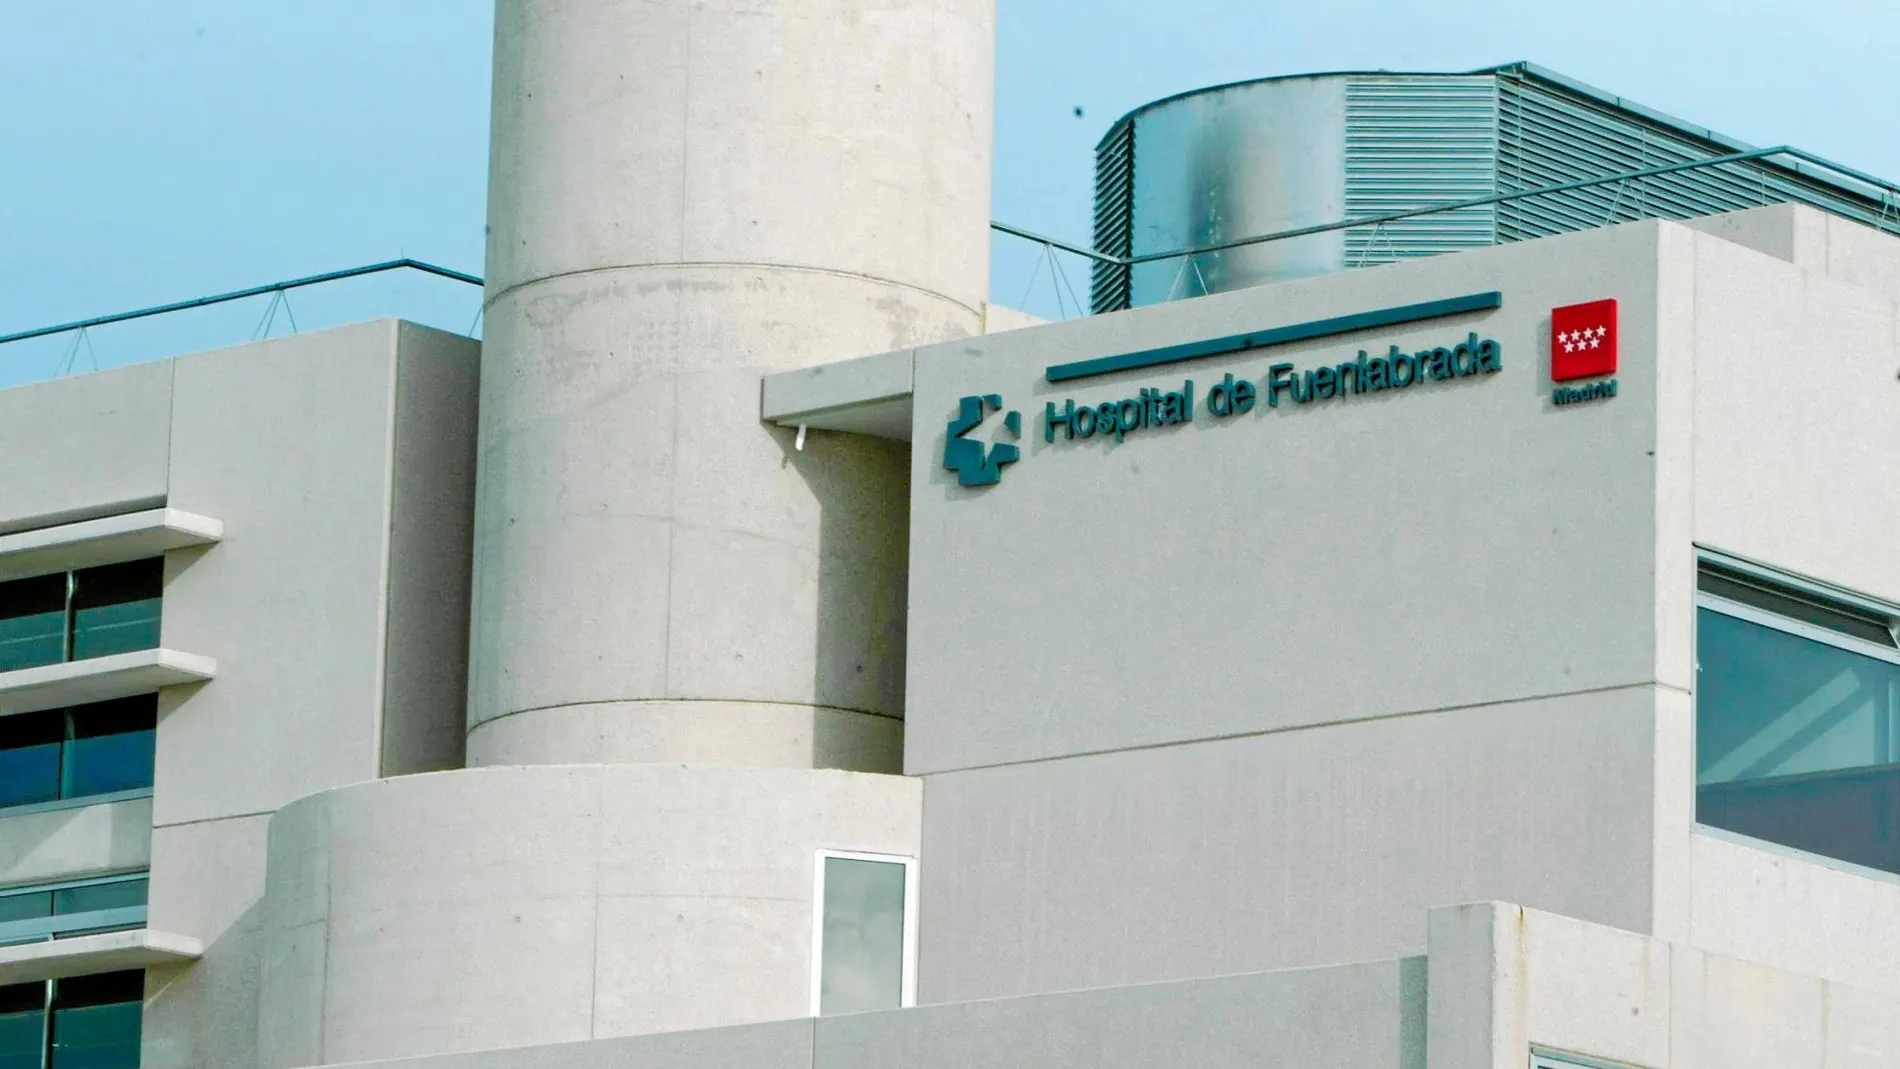 El Hospital de Fuenlabrada donde se sucedieron los hechos el pasado 24 de febrero / Foto: Luis Sevillano